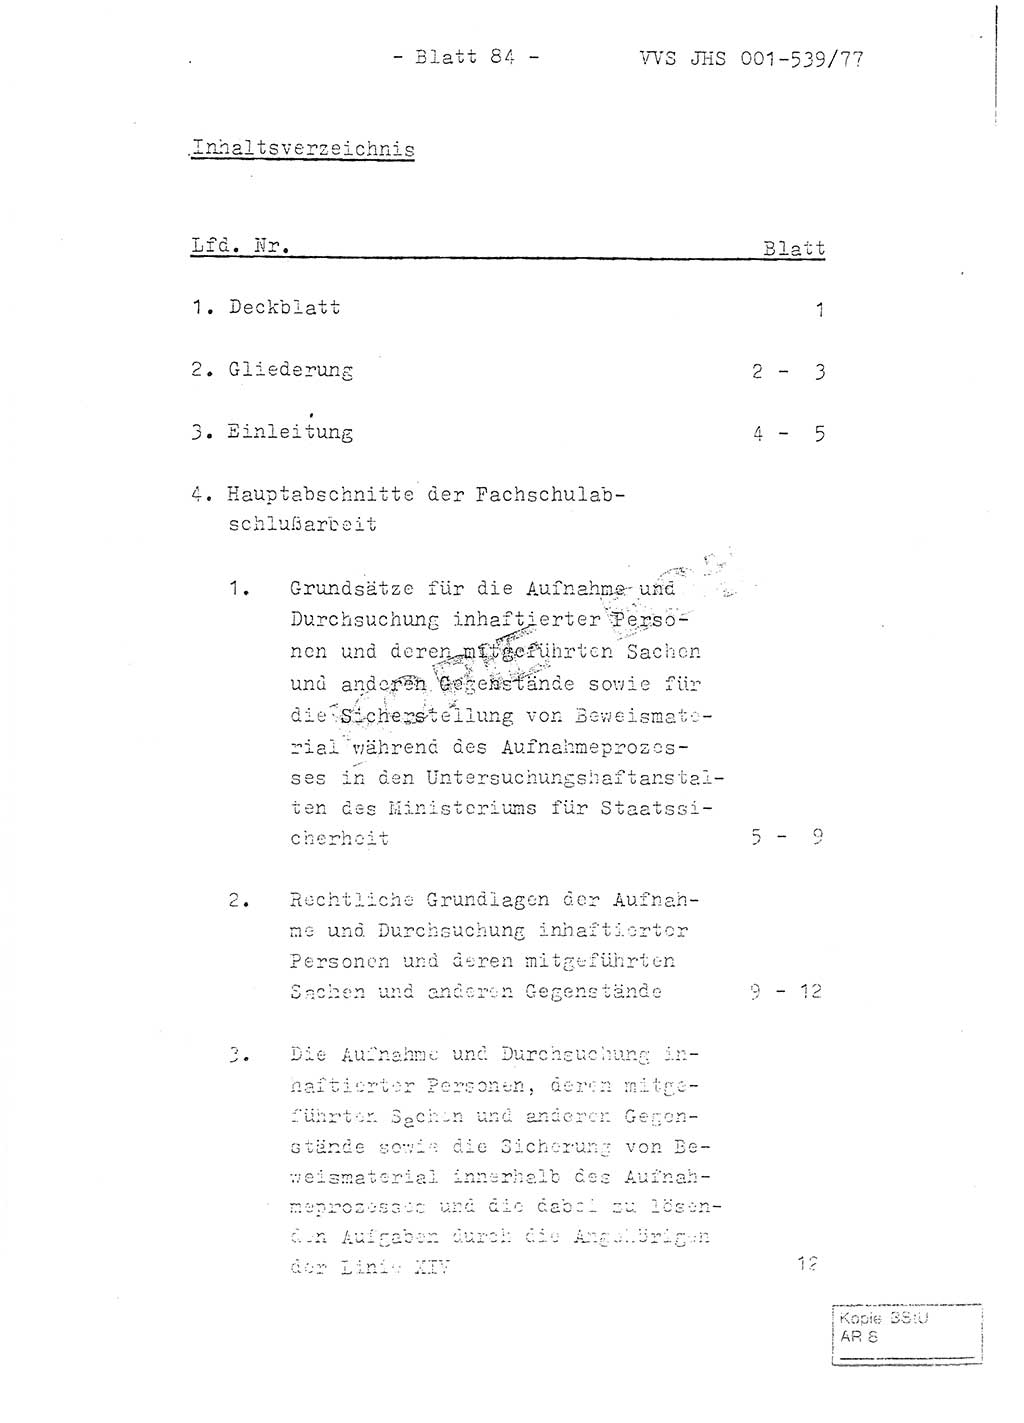 Fachschulabschlußarbeit Hauptmann Dietrich Jung (Abt. ⅩⅣ), Leutnant Klaus Klötzner (Abt. ⅩⅣ), Ministerium für Staatssicherheit (MfS) [Deutsche Demokratische Republik (DDR)], Juristische Hochschule (JHS), Vertrauliche Verschlußsache (VVS) 001-539/77, Potsdam 1978, Seite 84 (FS-Abschl.-Arb. MfS DDR JHS VVS 001-539/77 1978, S. 84)